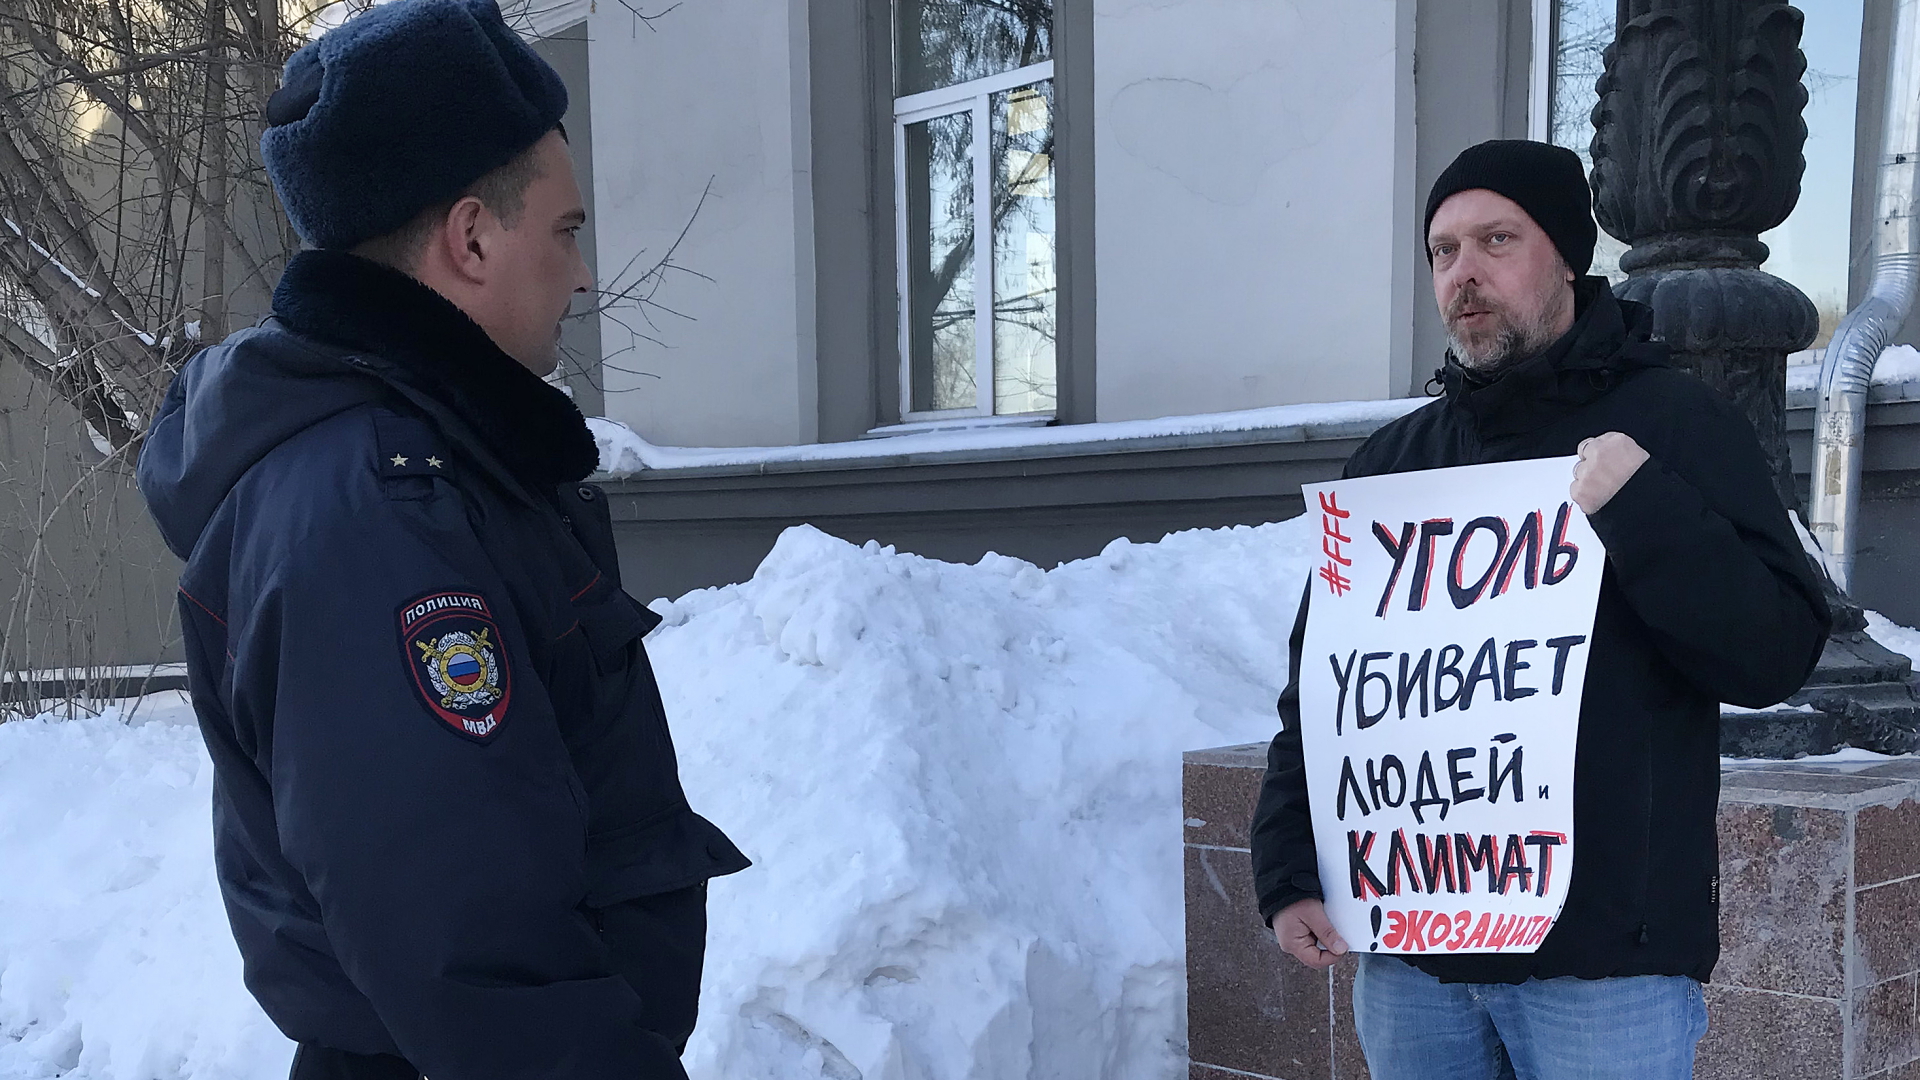  Ein russischer Milizionär studiert im März 2020 ein Protestplakat, mit dem der Umweltschützer Wladimir Sliwjak auf die Folgen der Kohle für das Klima und die Menschen hinweist | dpa